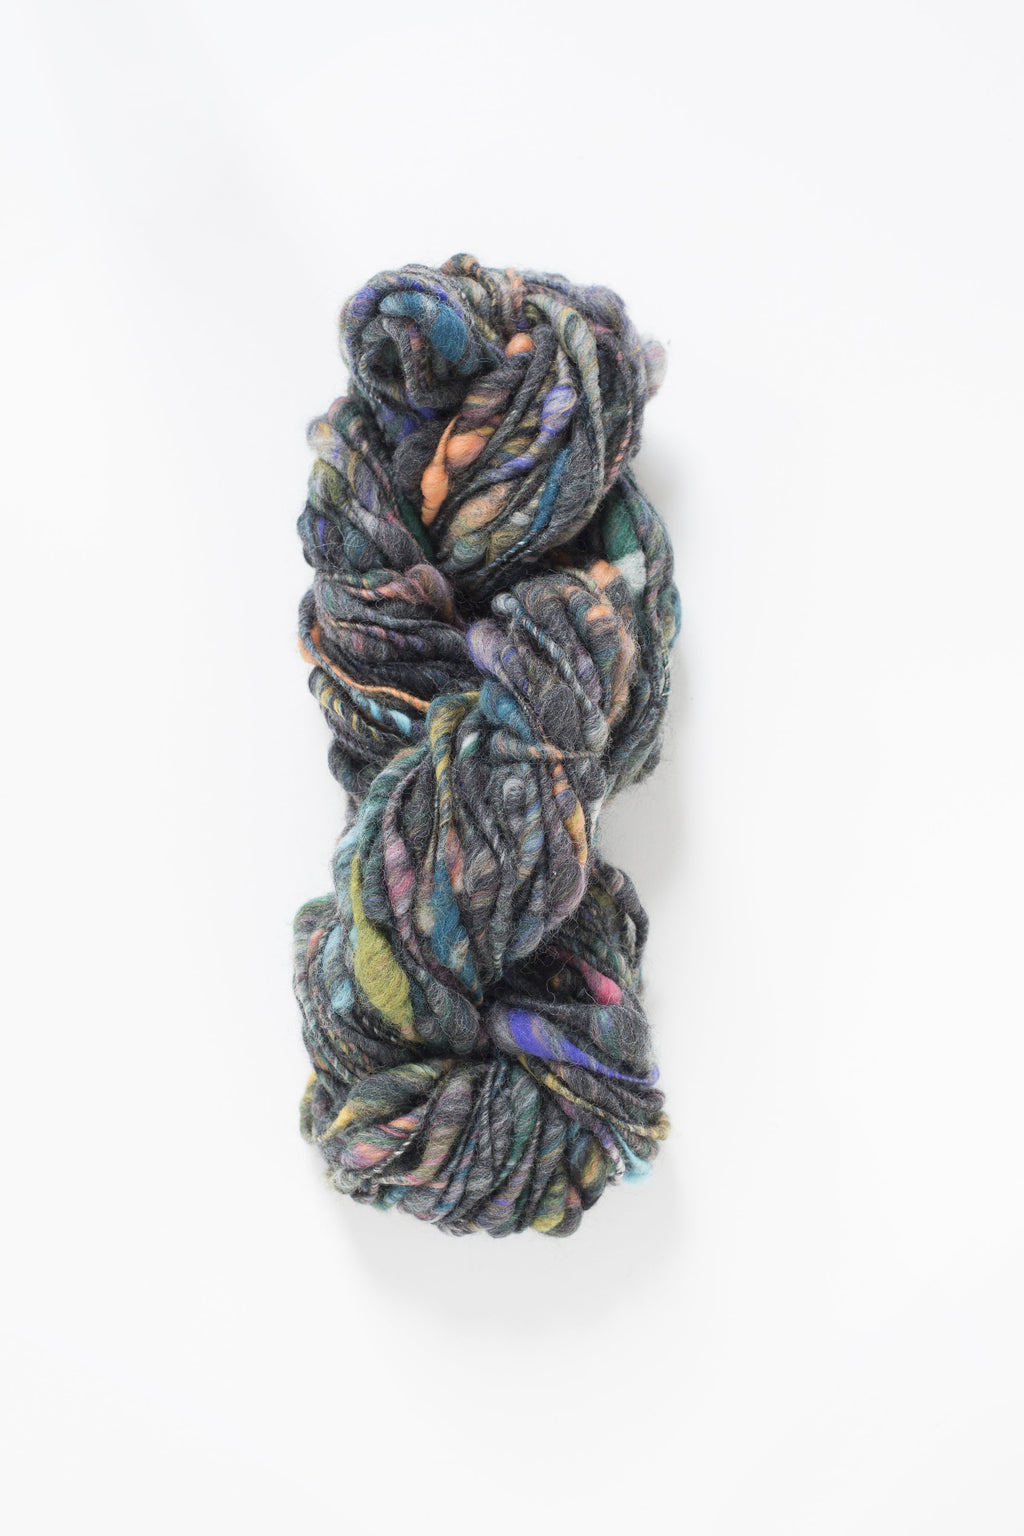 Cast Away Yarn hand knitting yarn - chunky bulky handspun yarn in Charcoal Blossom